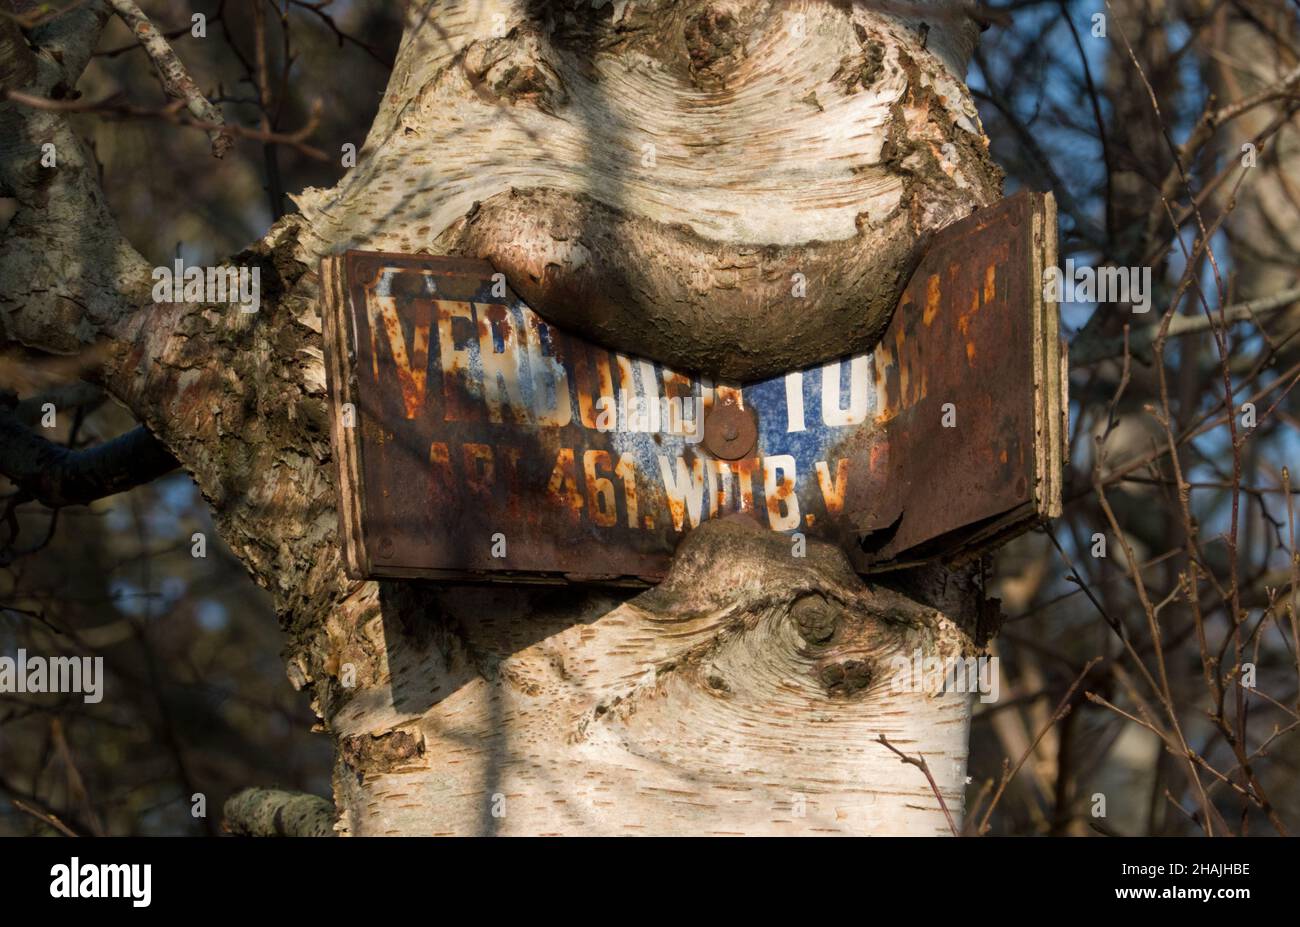 Signe rouillé avec en néerlandais les mots interdit entrée cloué à un arbre, cultivé dans l'écorce. Presque illisible Banque D'Images